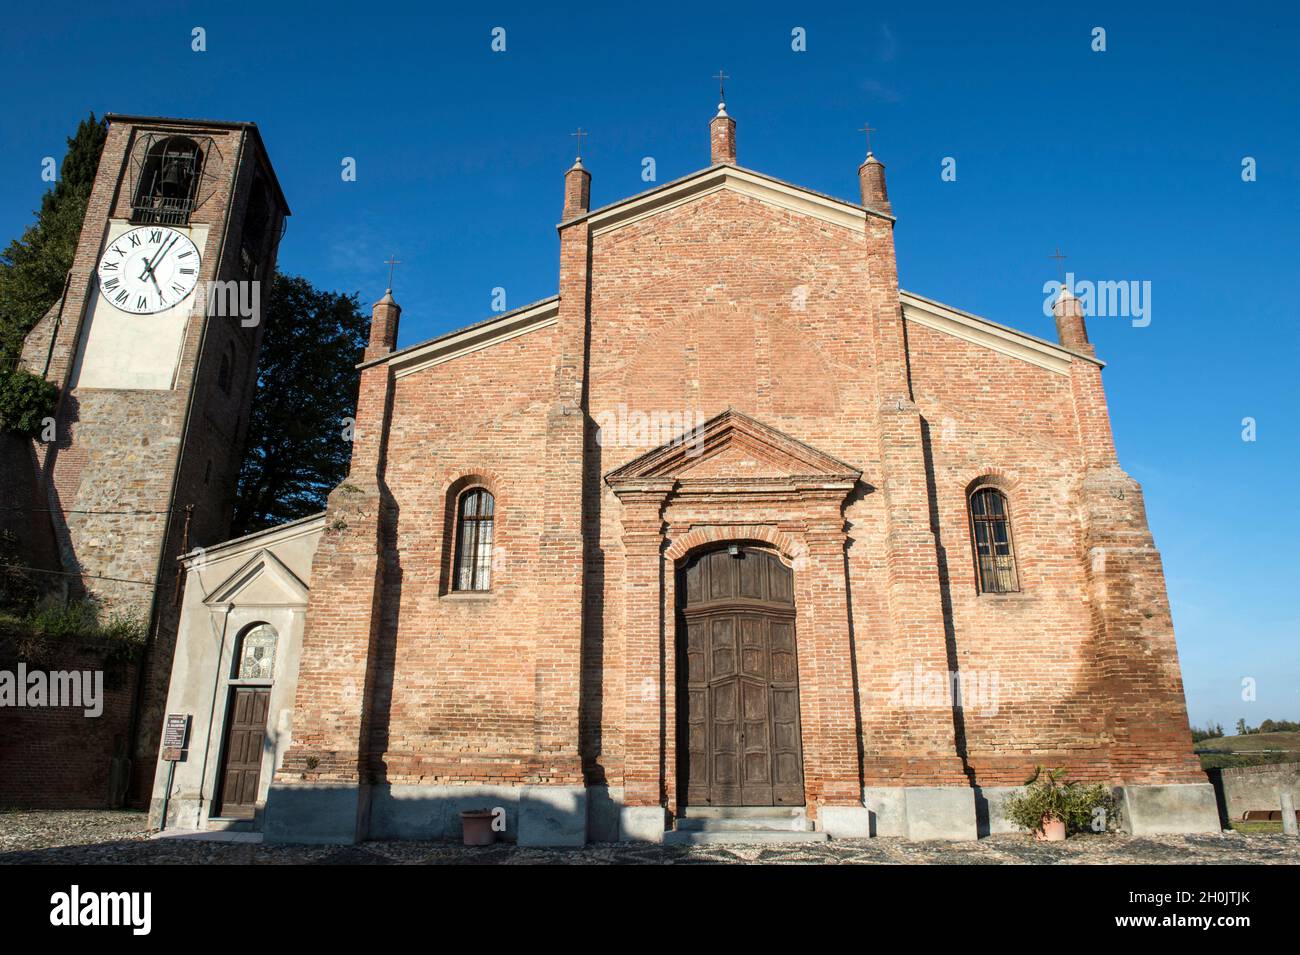 Italy, Piedmont, Monferrato, Ozzano Monferrato, San Salvatore church Stock Photo